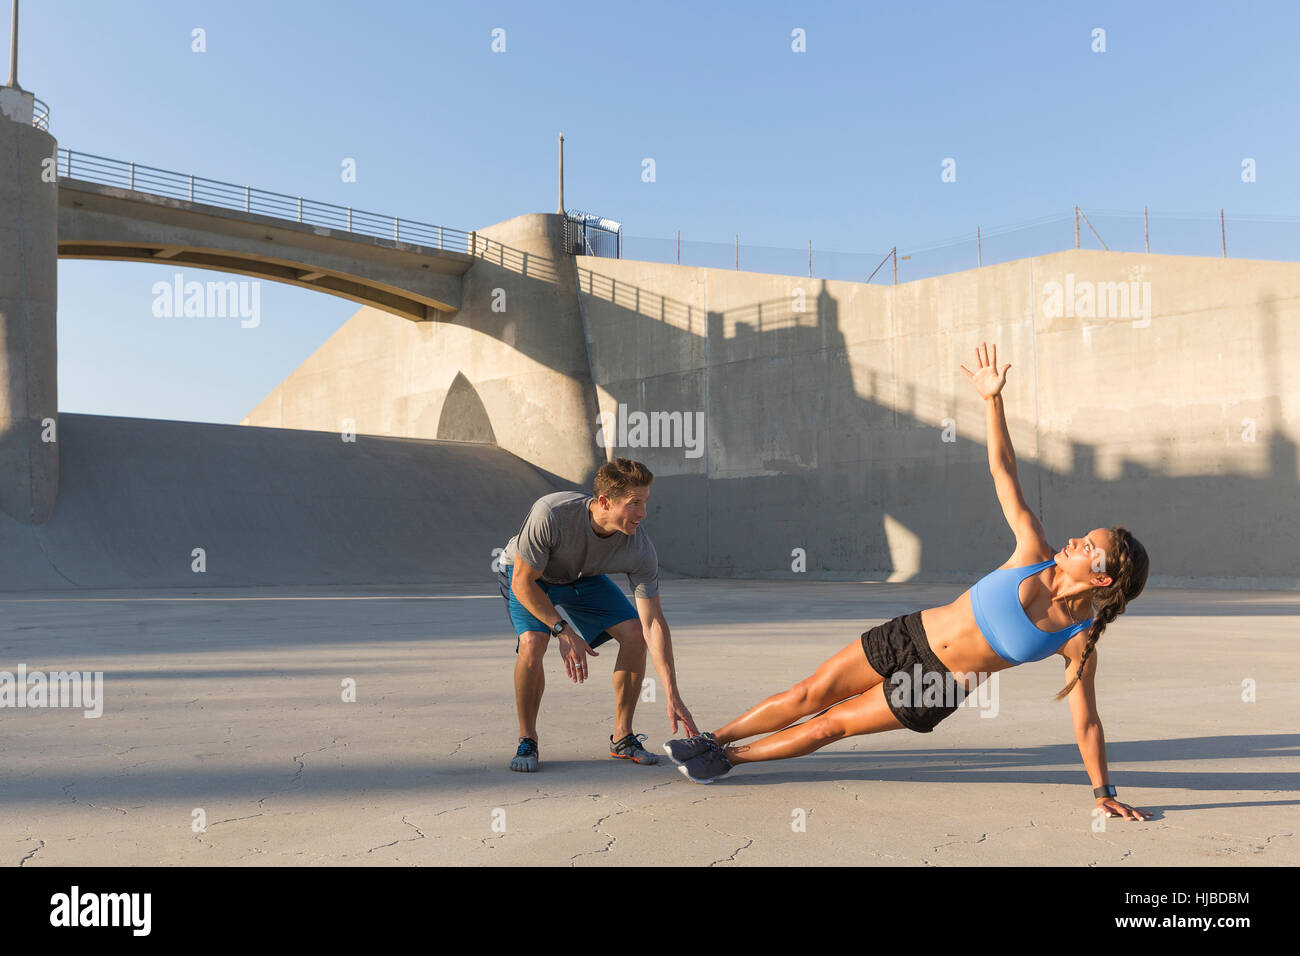 Atleta maschio aiutando un amico con allenamento, Van Nuys, CALIFORNIA, STATI UNITI D'AMERICA Foto Stock